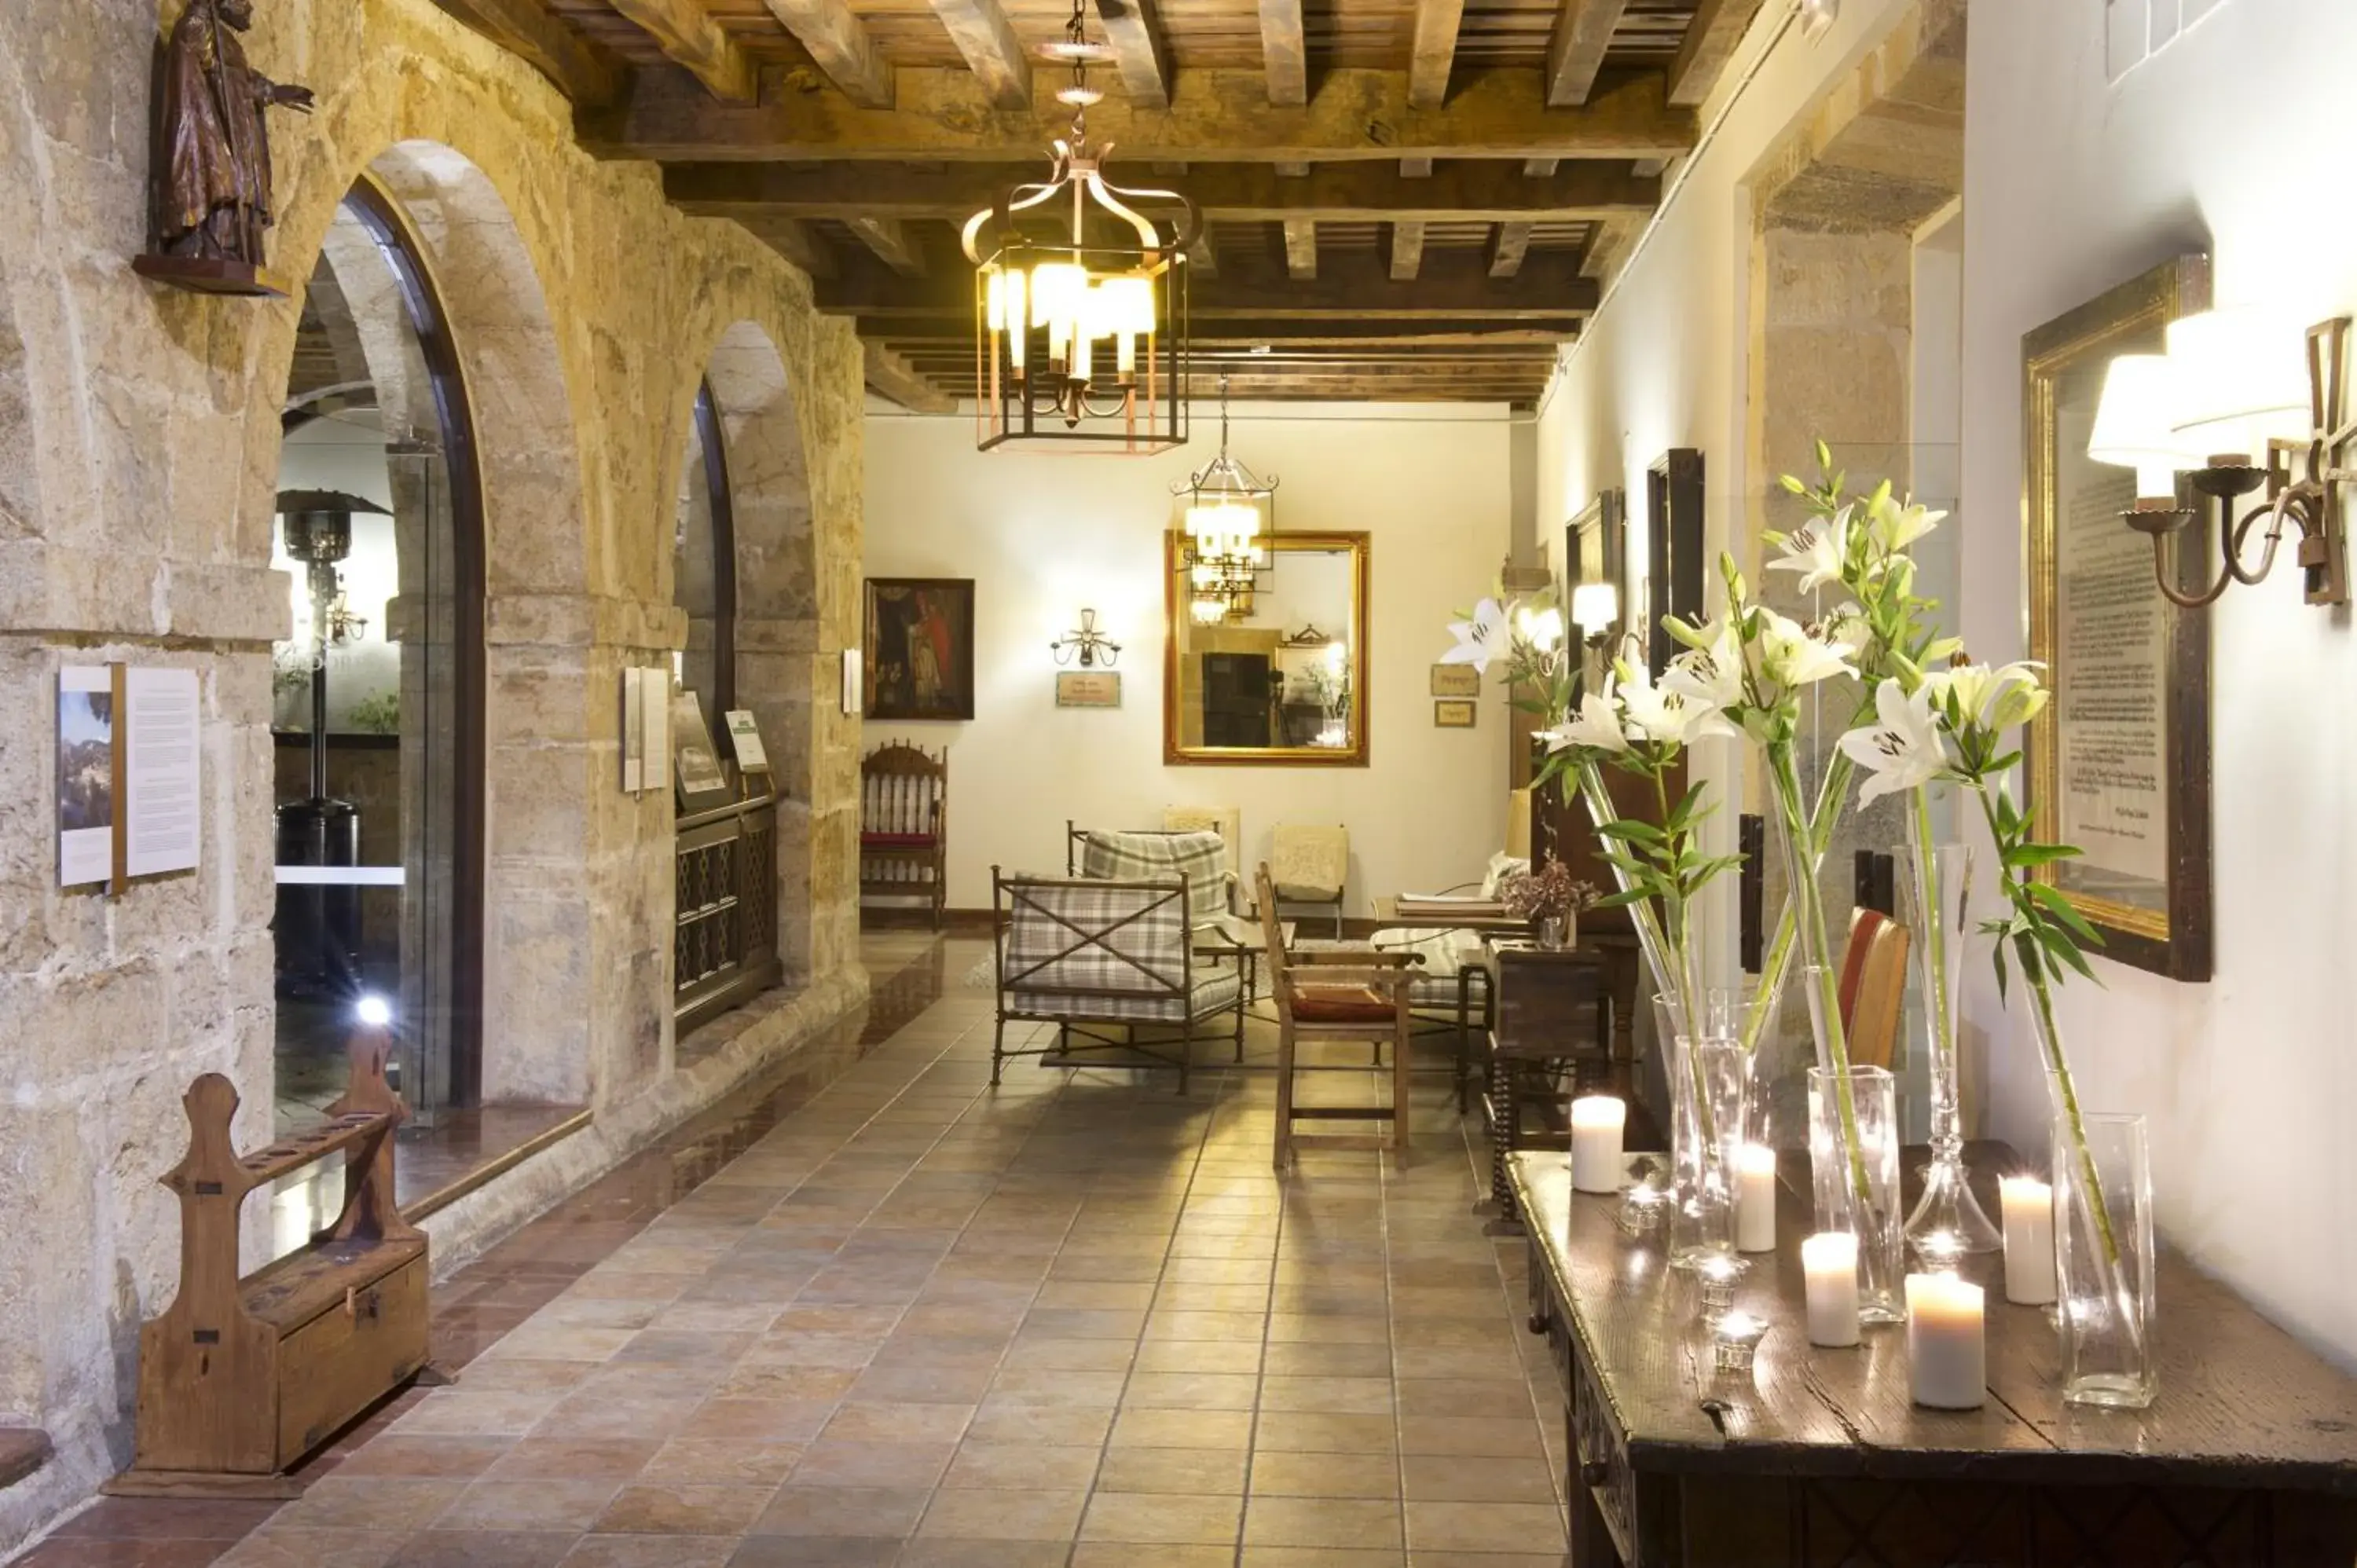 Decorative detail, Restaurant/Places to Eat in Parador de Cangas de Onís